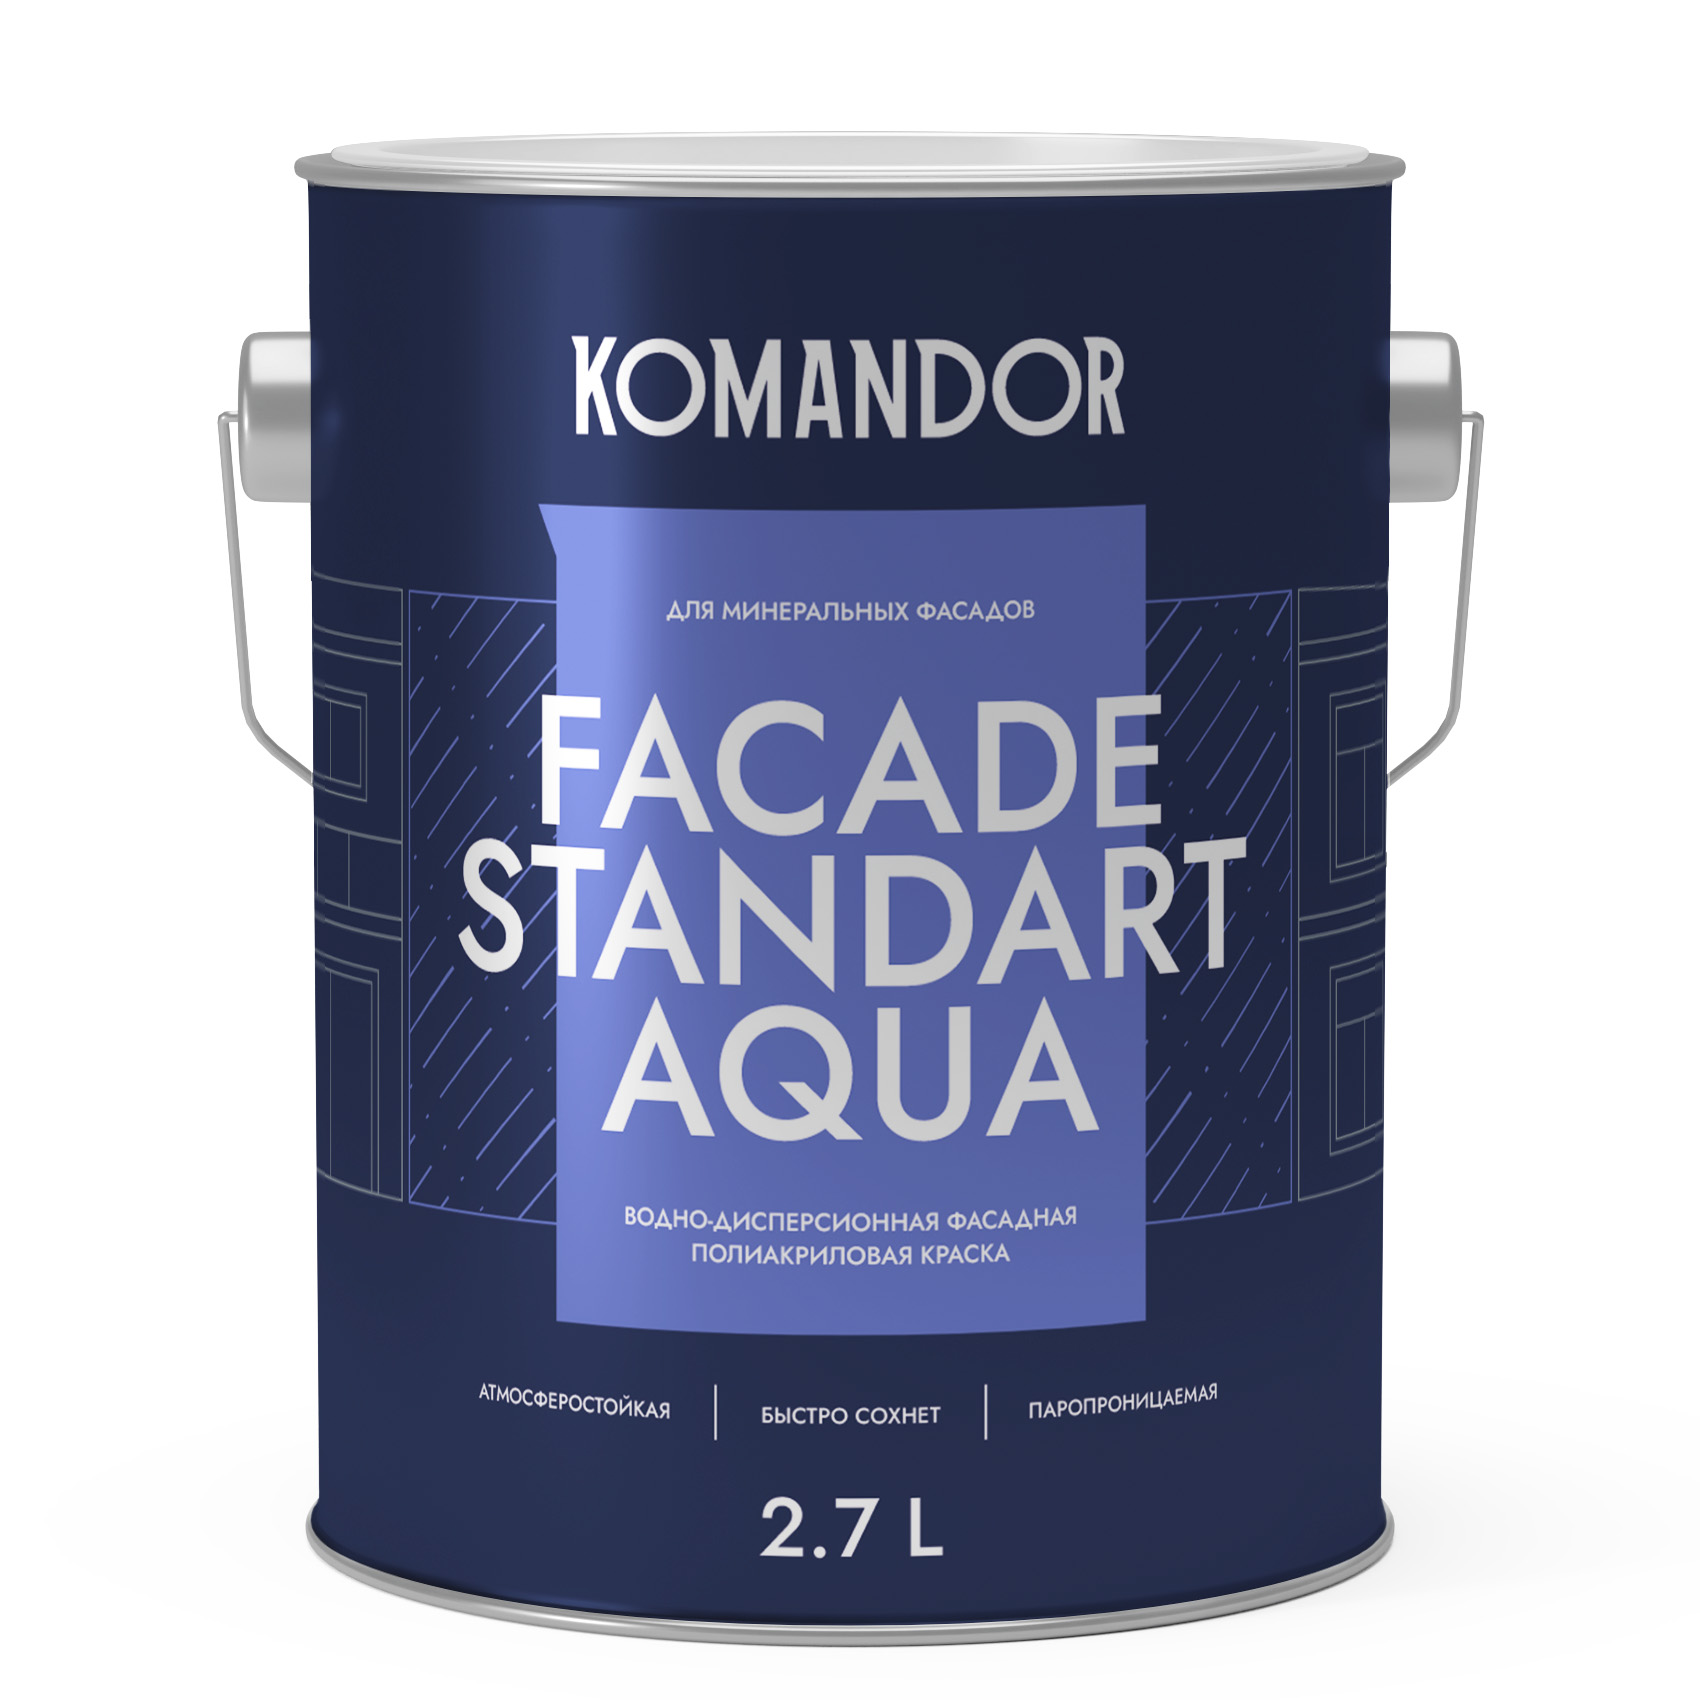 Краска для фасадов Komandor Facade Standart Aqua C S1308003003 глубокоматовая 2,7 л - фото 1